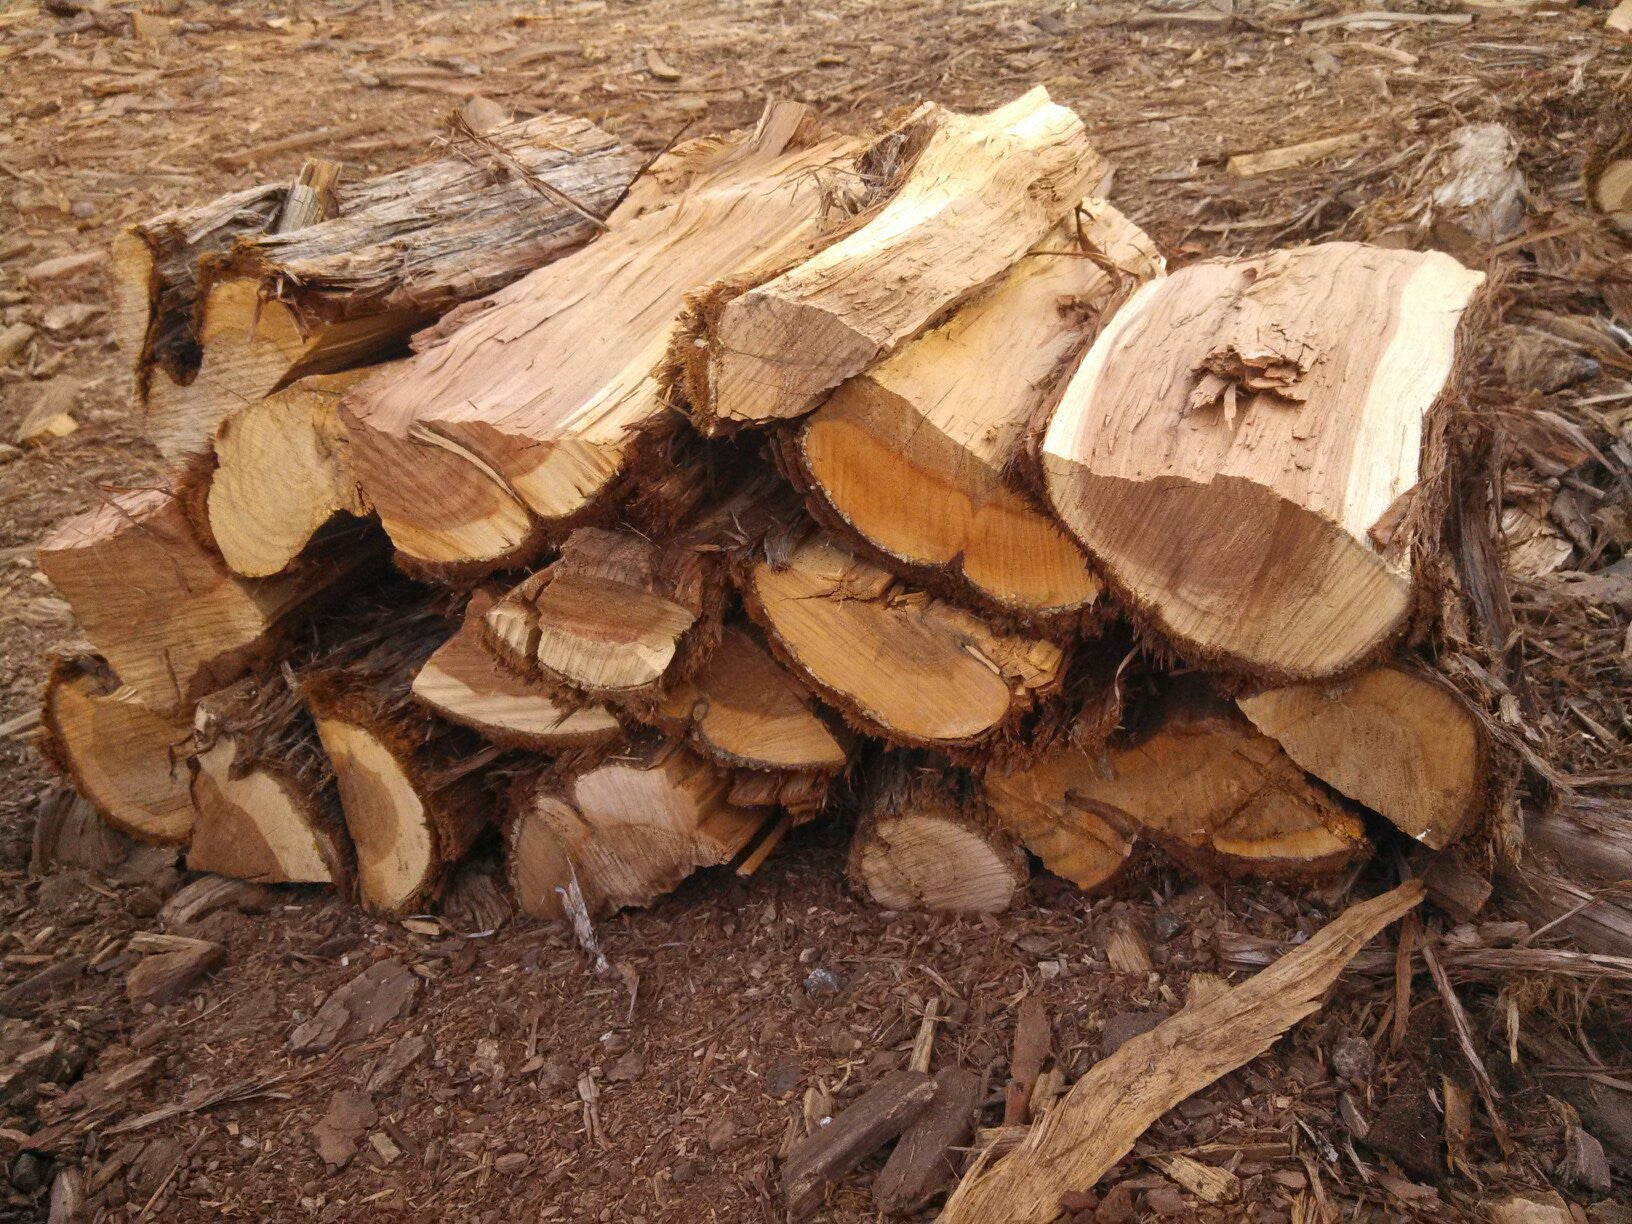 Juniper - A fragrant wood